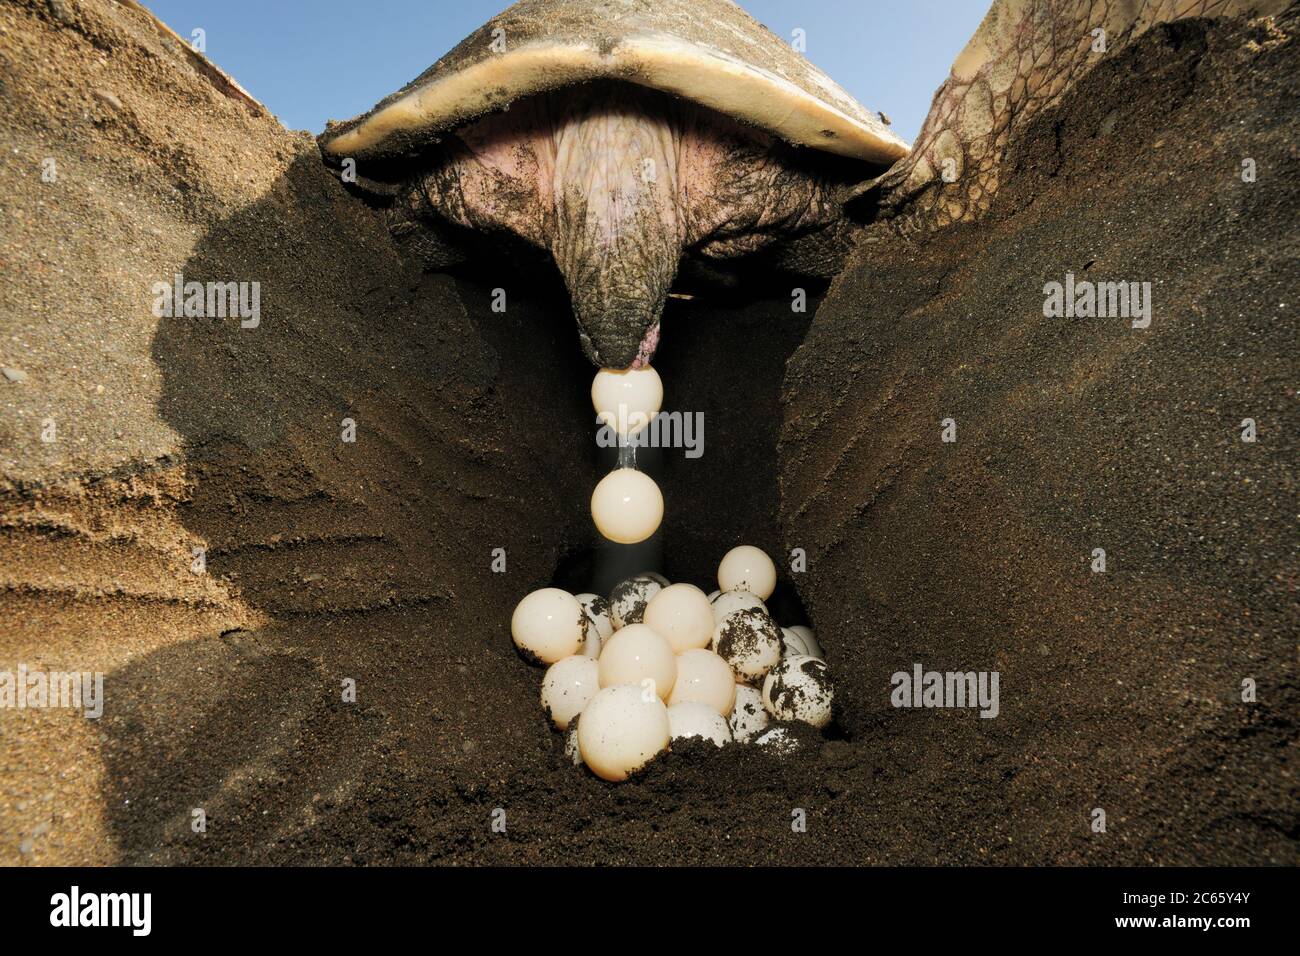 Nach dem Ausgraben eines Lochs von 30 bis 50 Zentimeter Tiefe mit den hinteren Flossen legt die Olive ridley Meeresschildkröte (Lepidochelys olivacea) ca. 100 Eier. [Größe des einzelnen Organismus: 80 cm] Stockfoto